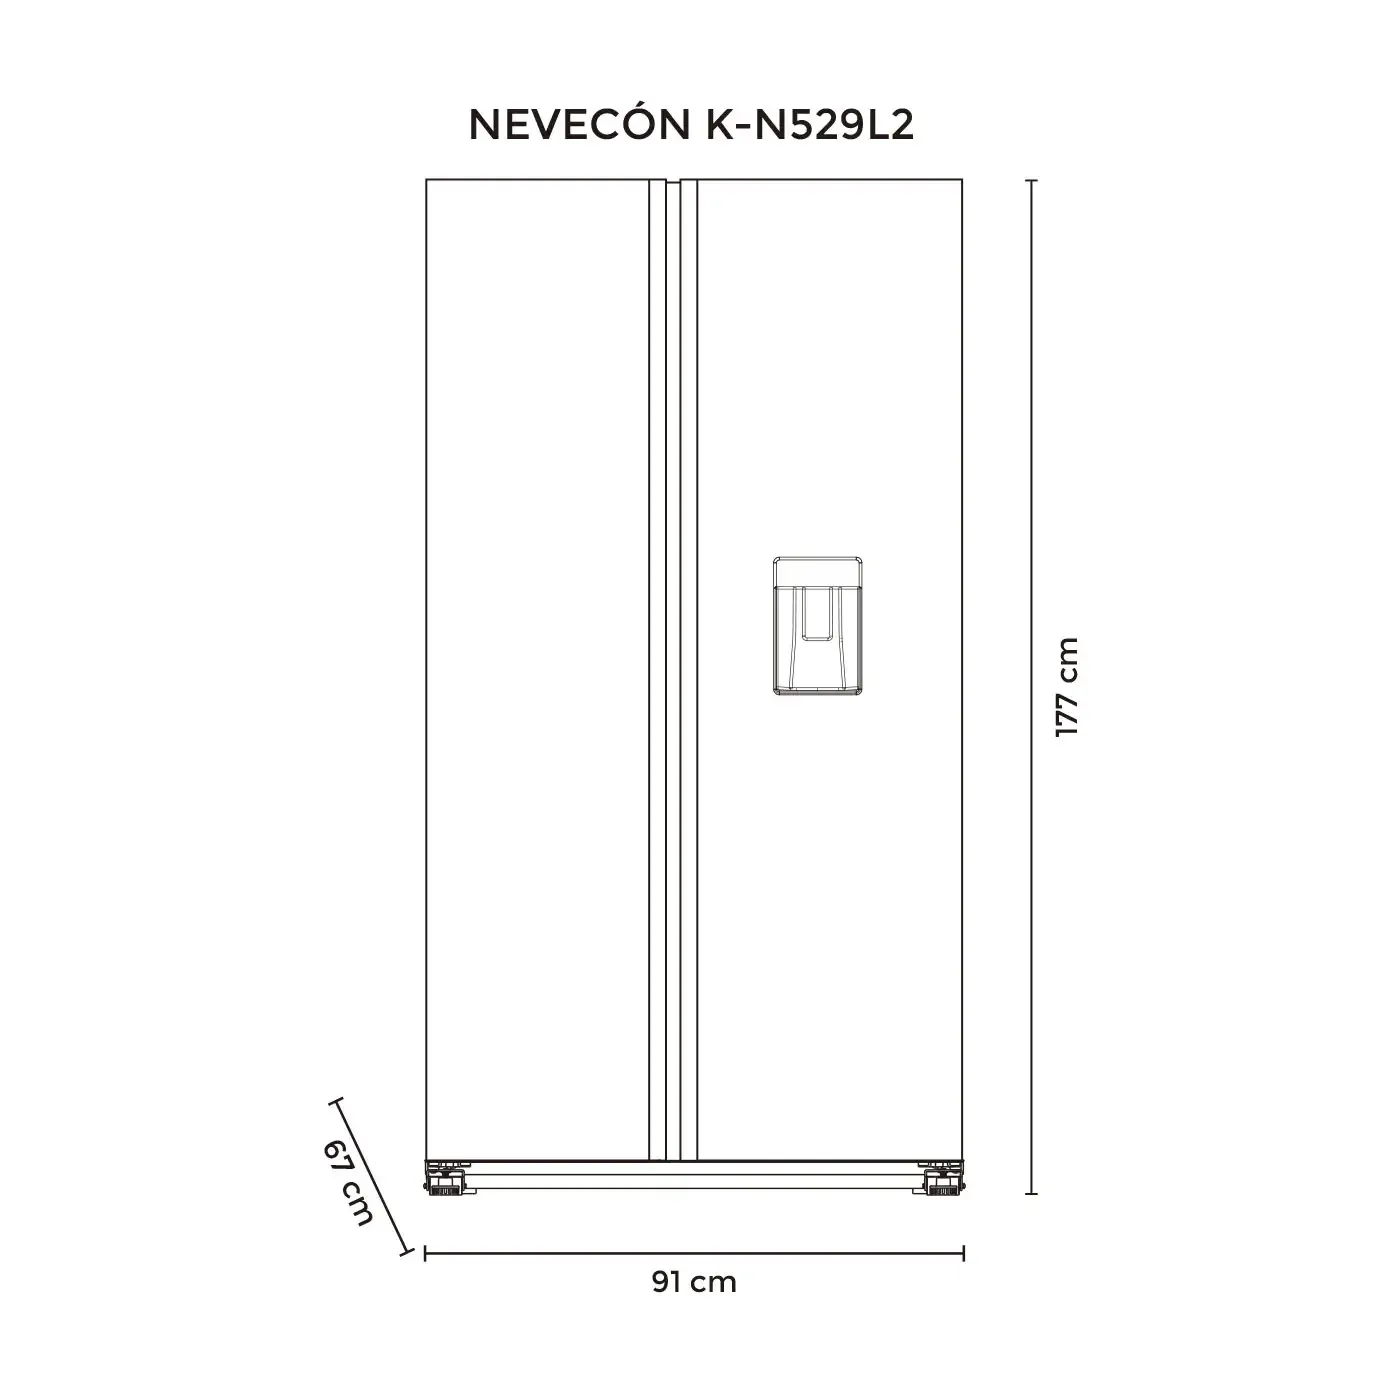 Nevecón KALLEY Side by Side 529 Litros K-N529L2 Gris